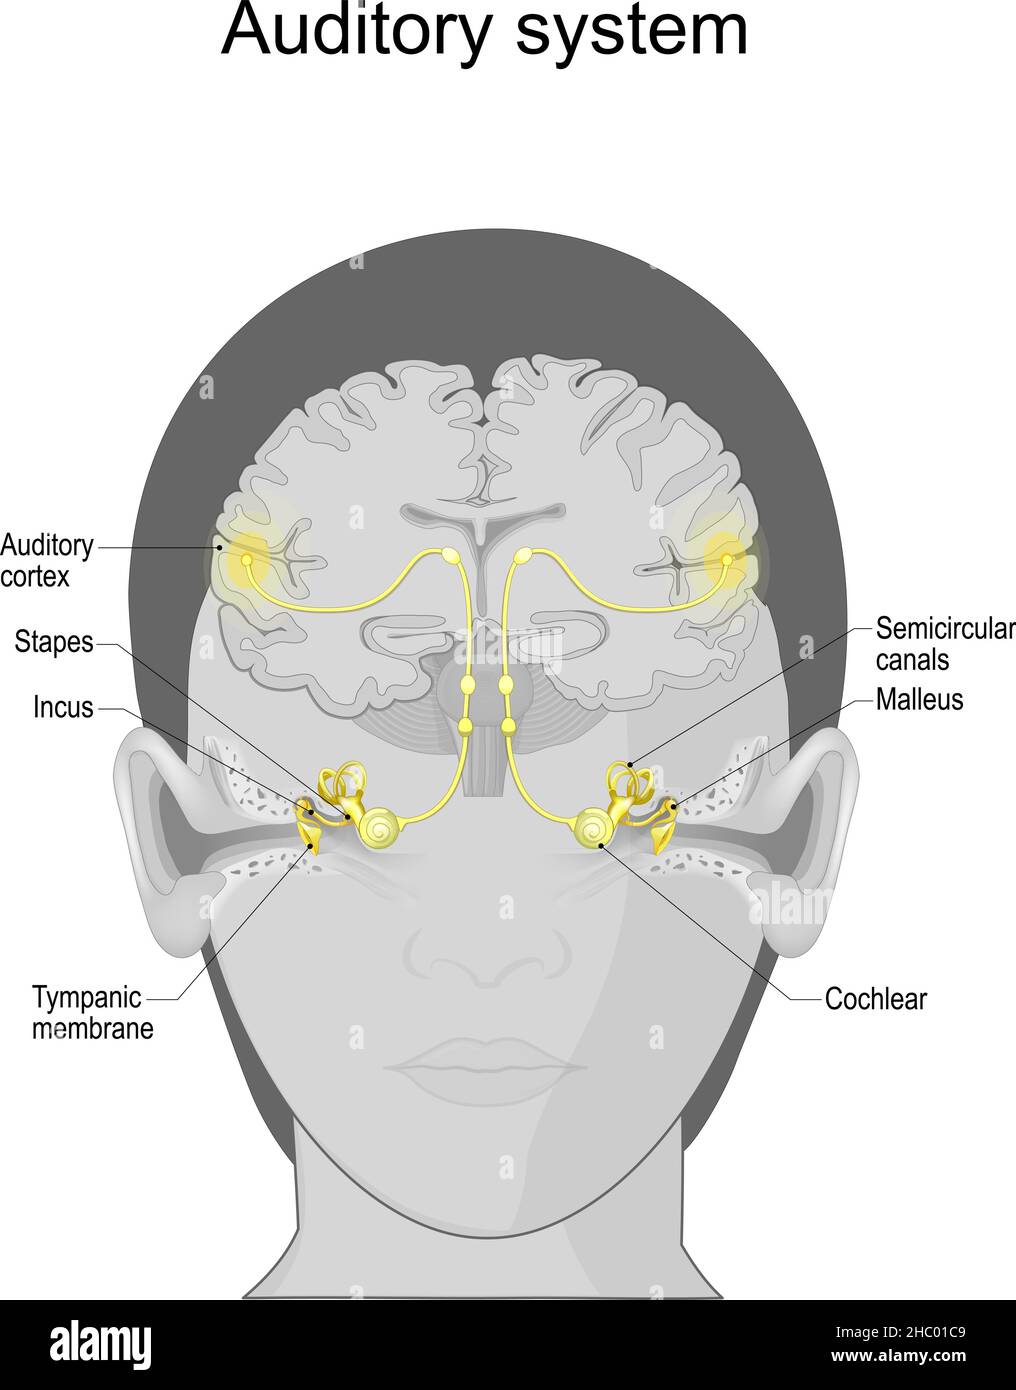 Hörsystem von der Tympanic Membran und Cochlea im Ohr bis zum auditorischen Kortex im Gehirn. Sensorisches System für den Hörsinn. Anatomie Stock Vektor